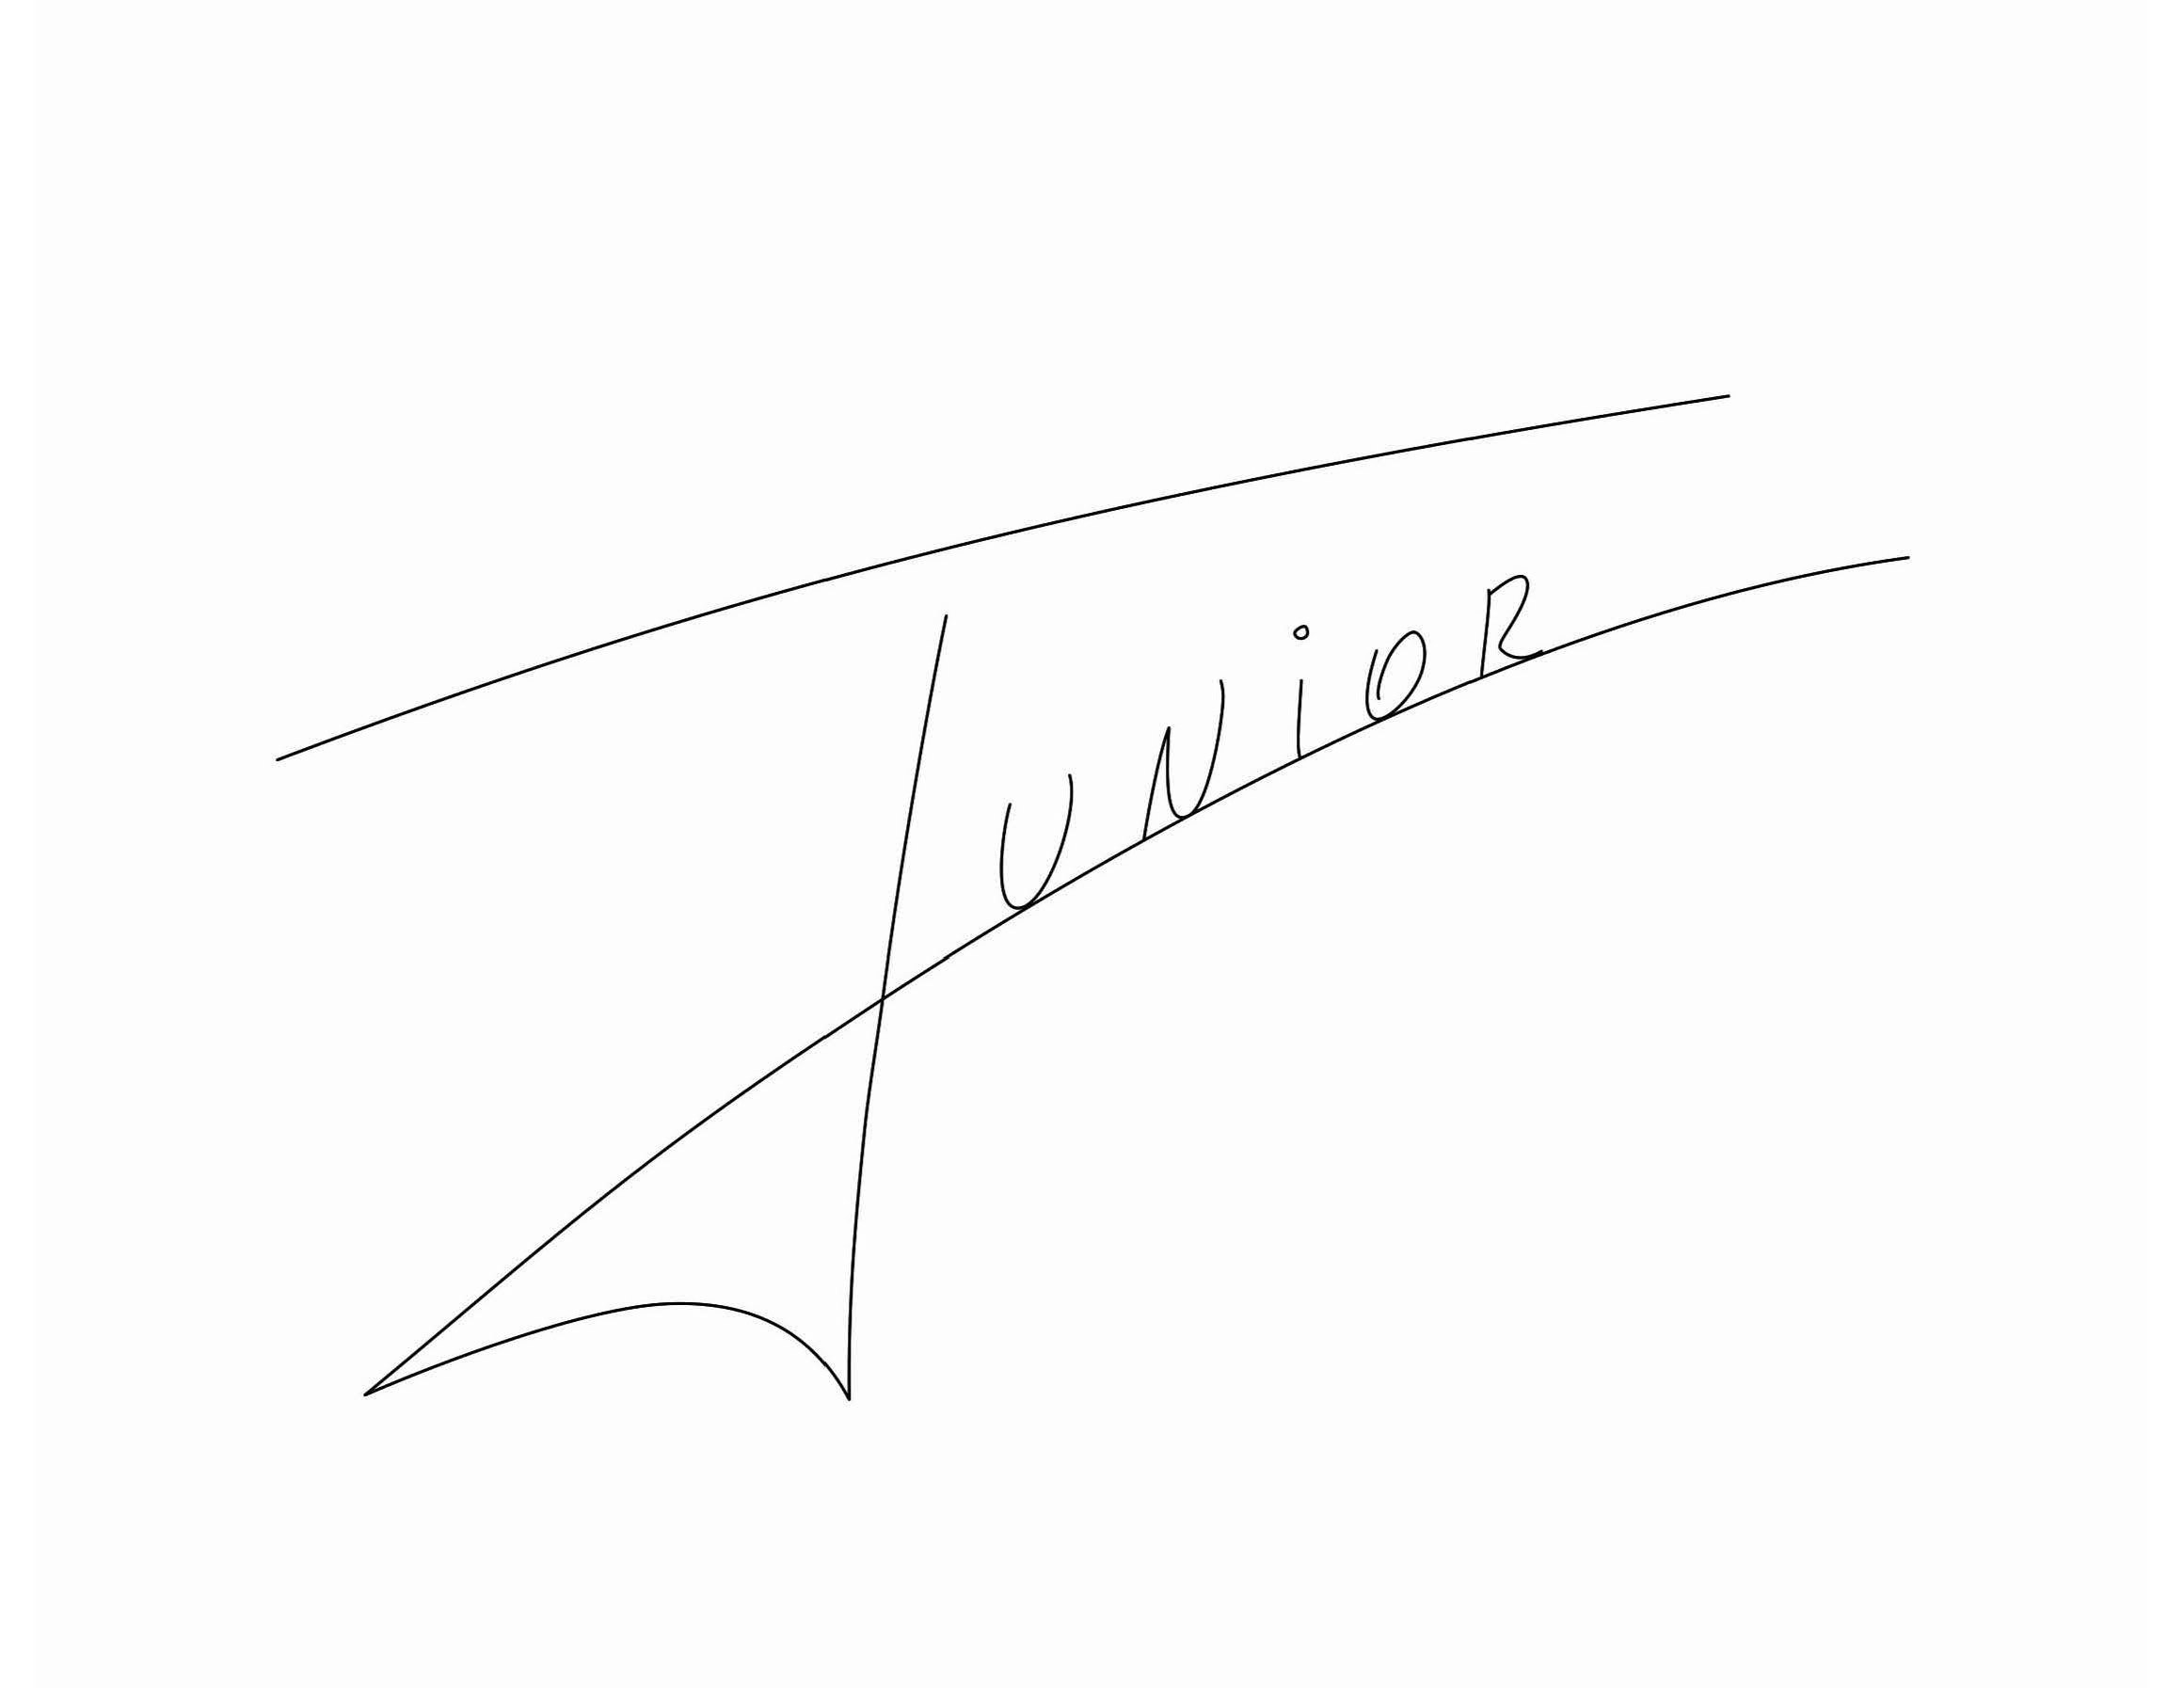 Trademark Logo JUNIOR